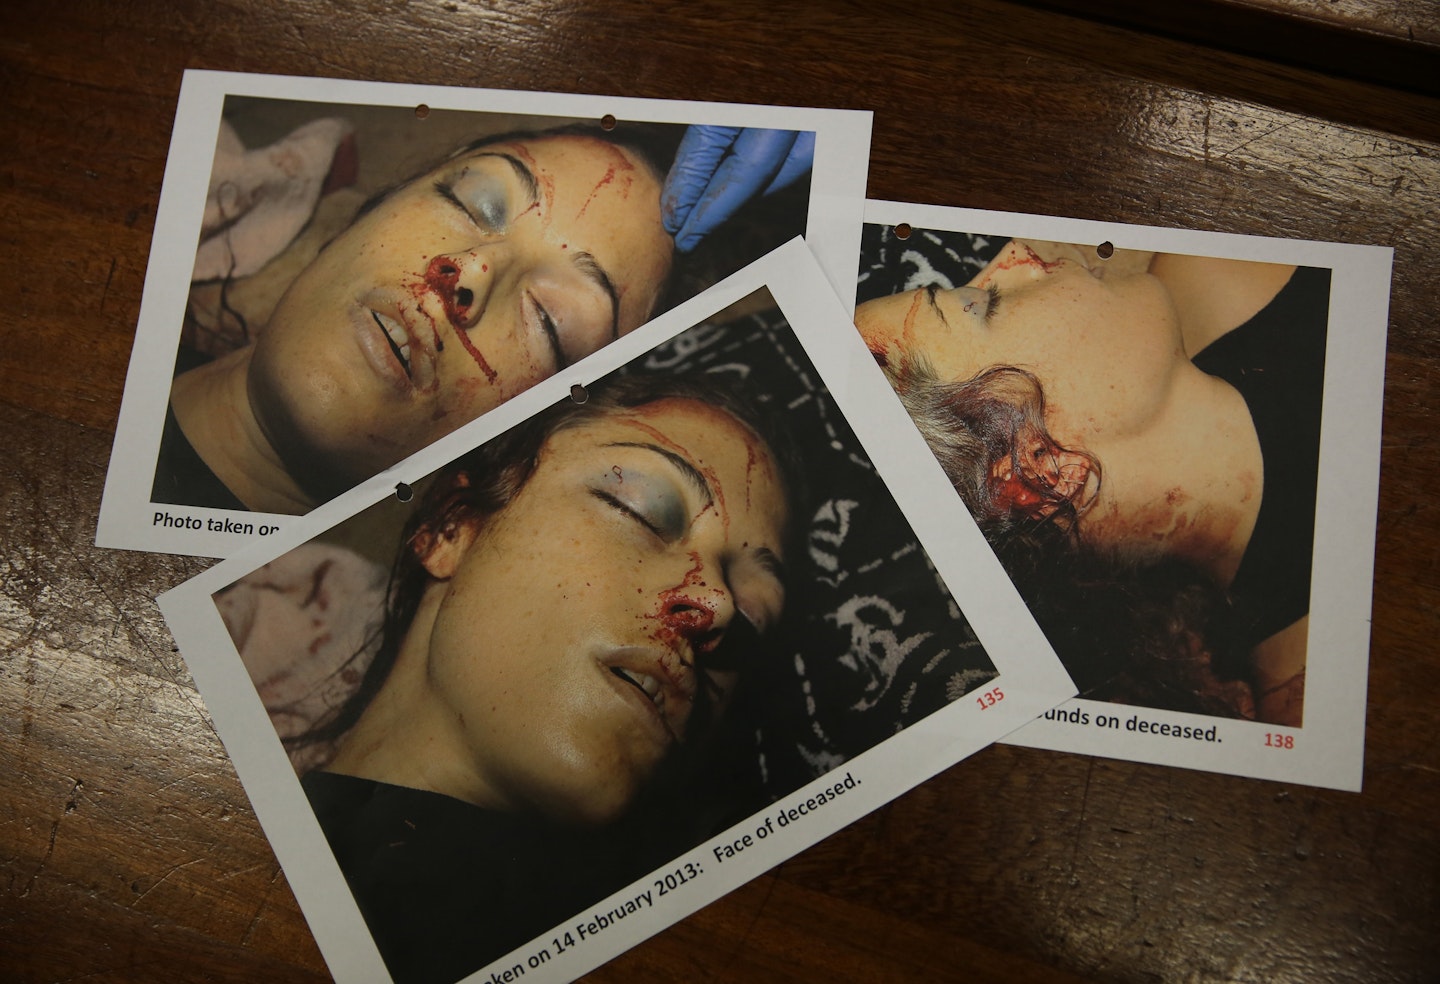 Reeva Steenkamp - court released photos of her dead body